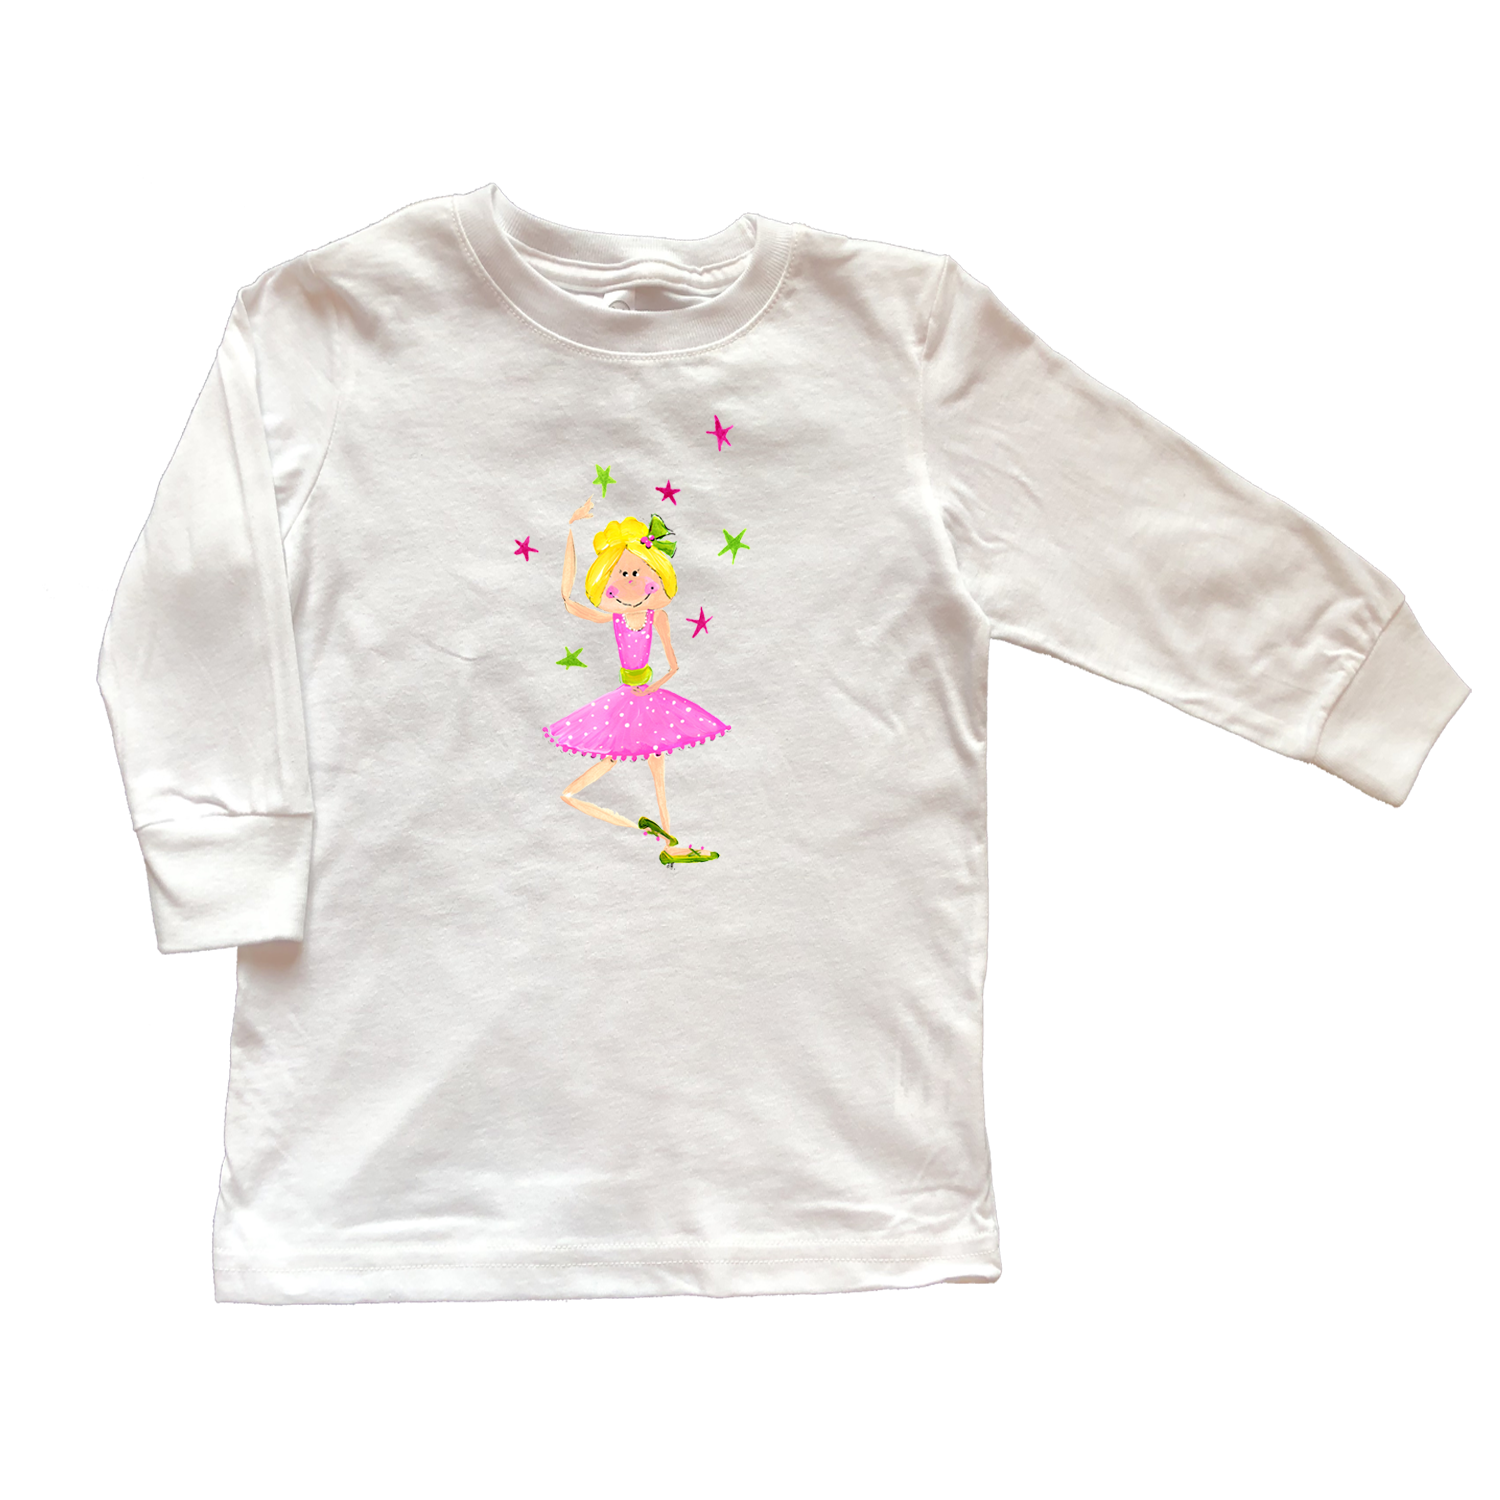 Cotton Tee Shirt Long Sleeve 846 Ballerina Beverly